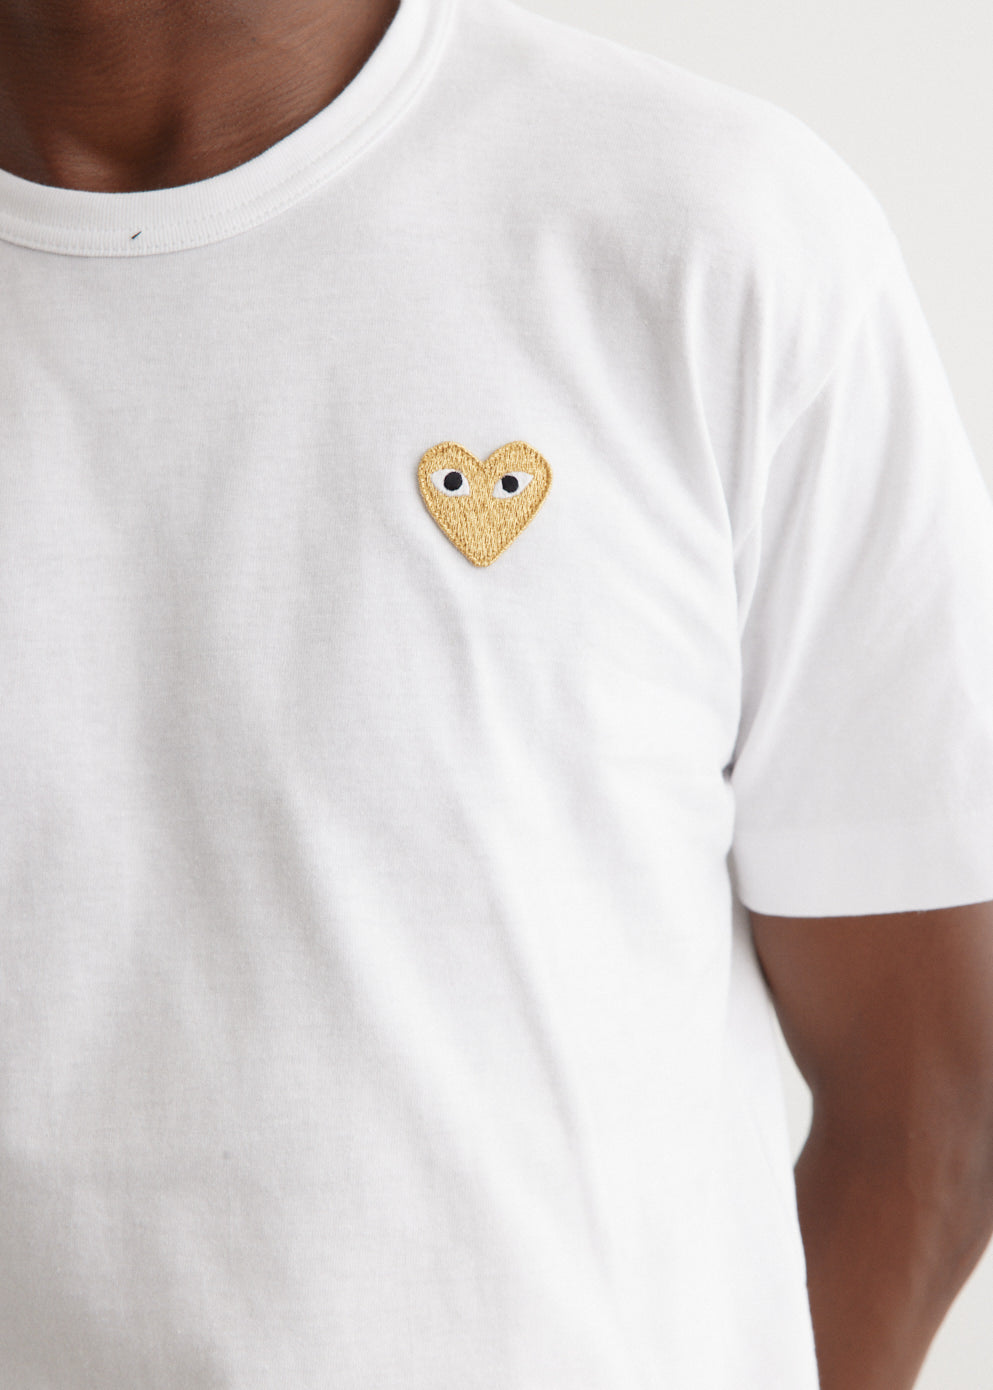 T216 Gold Heart T-Shirt